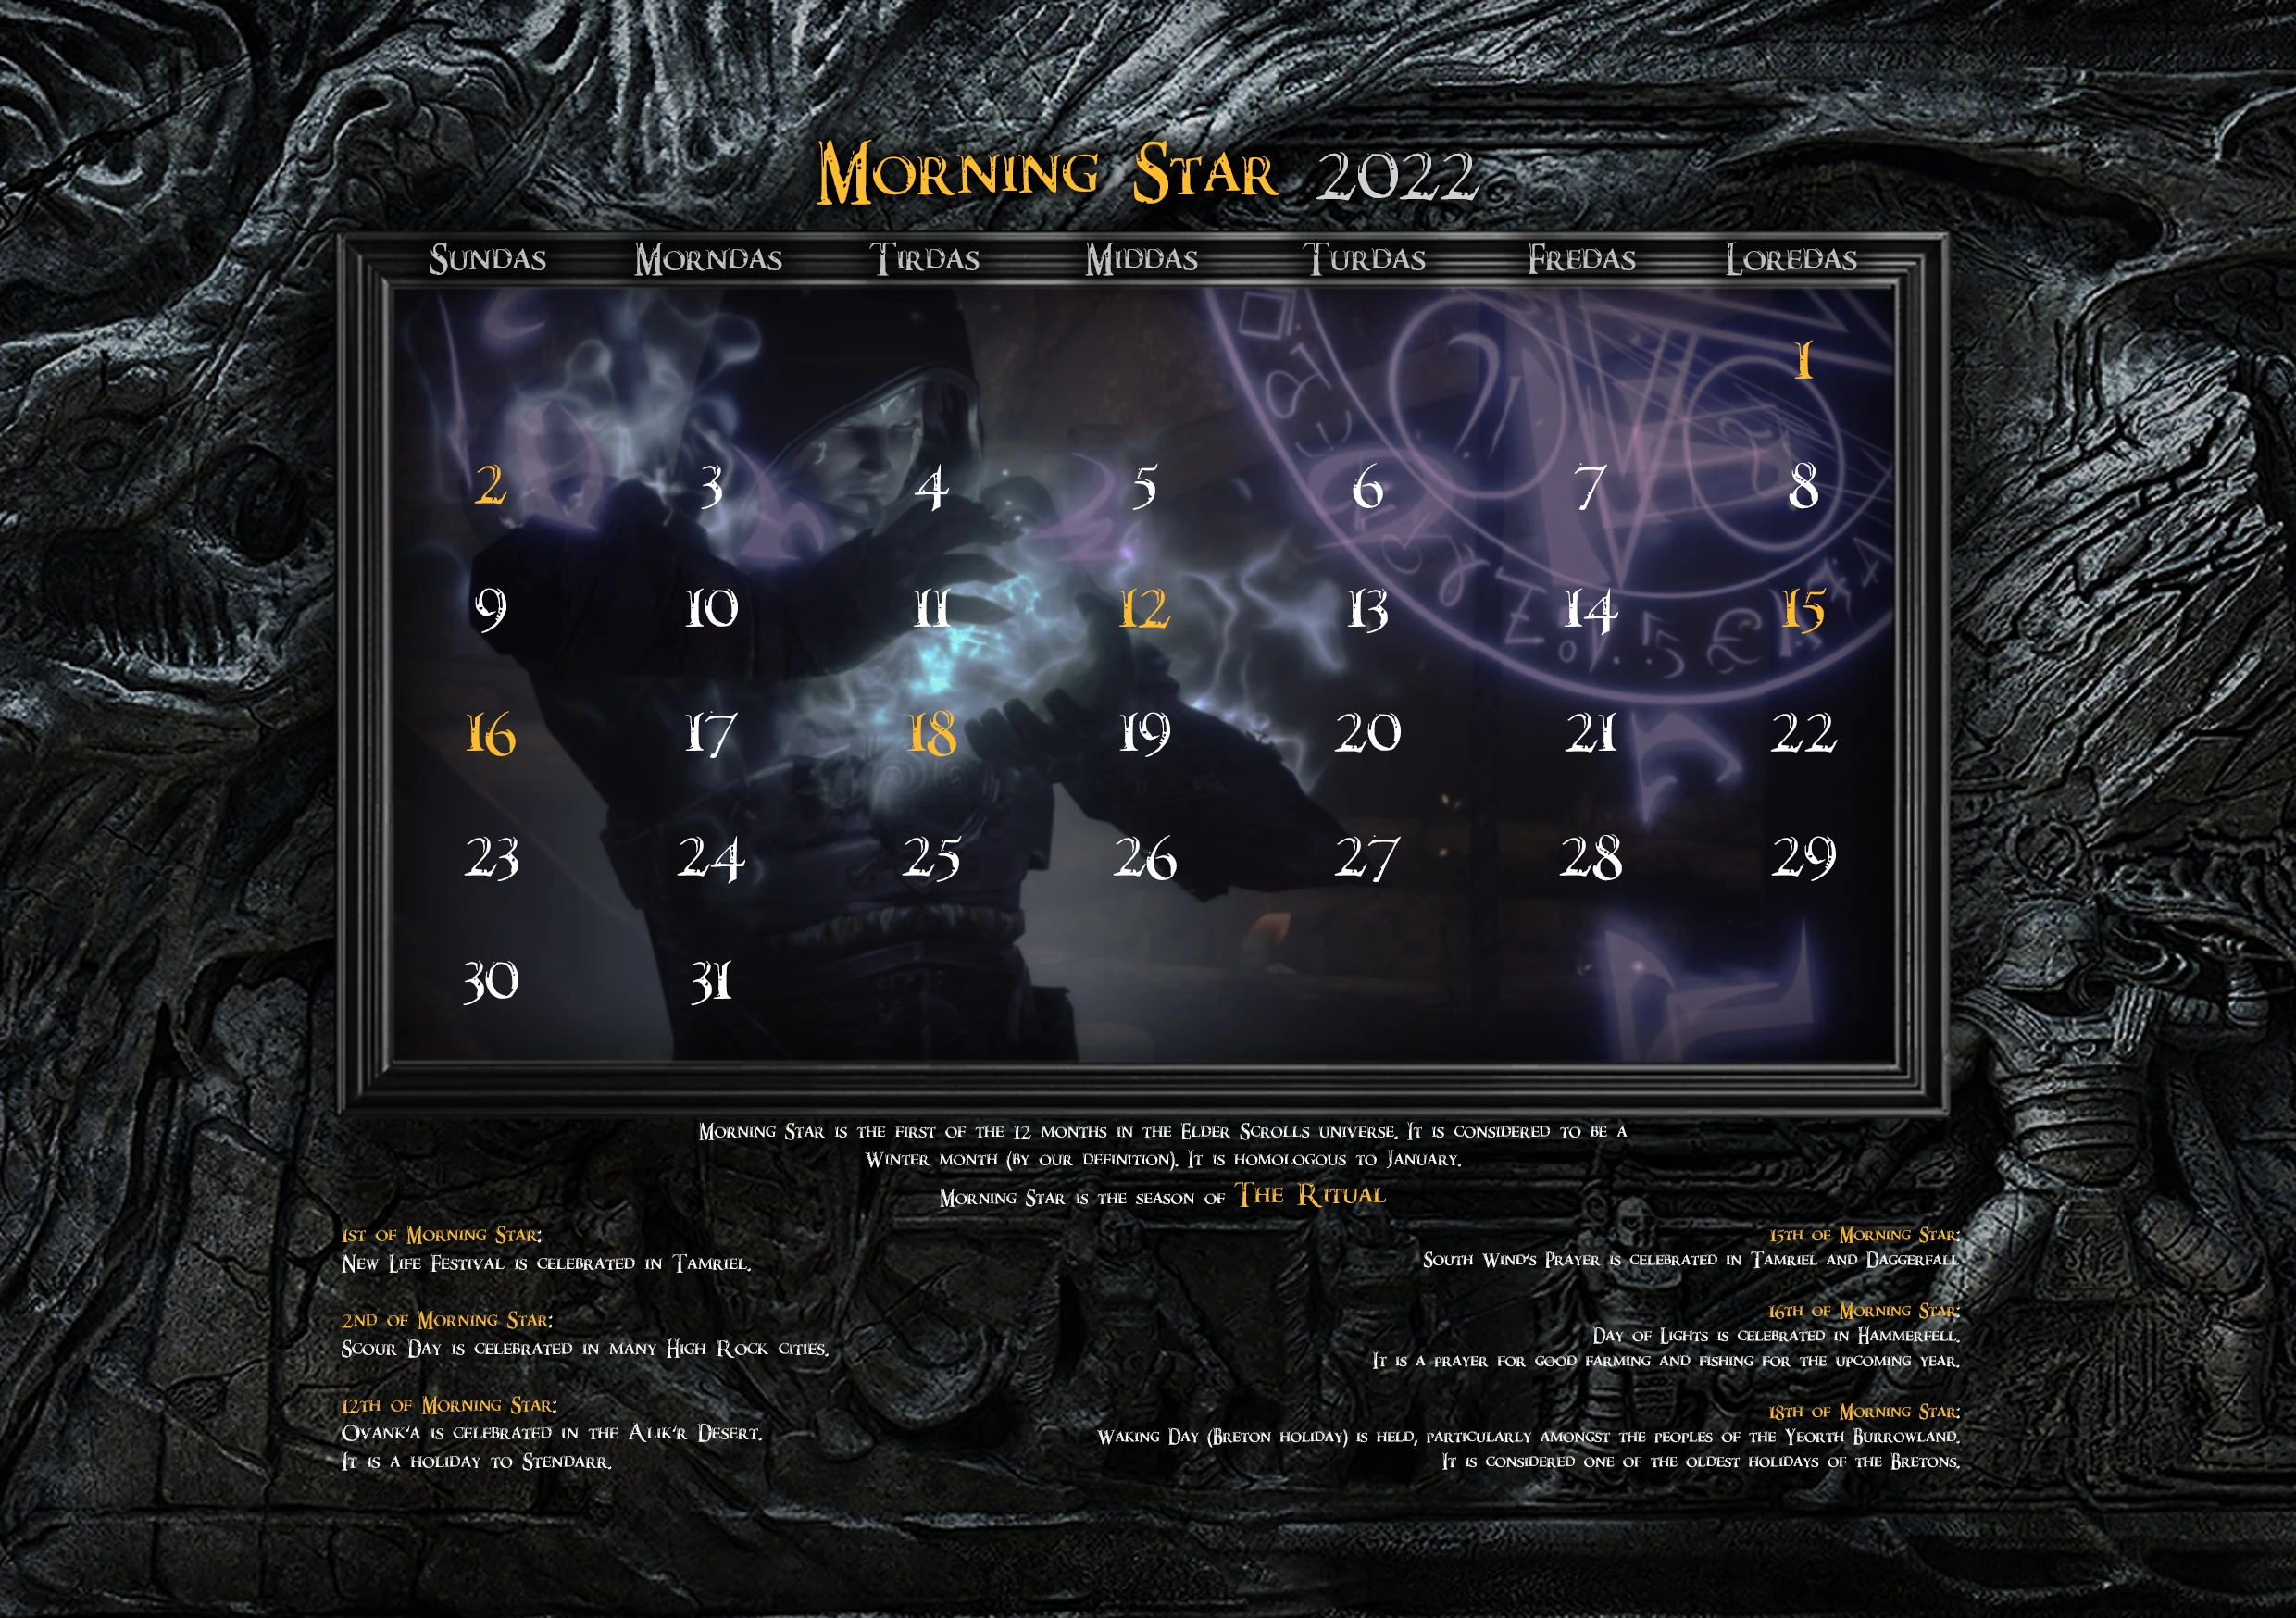 Skyrim Calendar for 2022 at Skyrim Special Edition Nexus Mods and